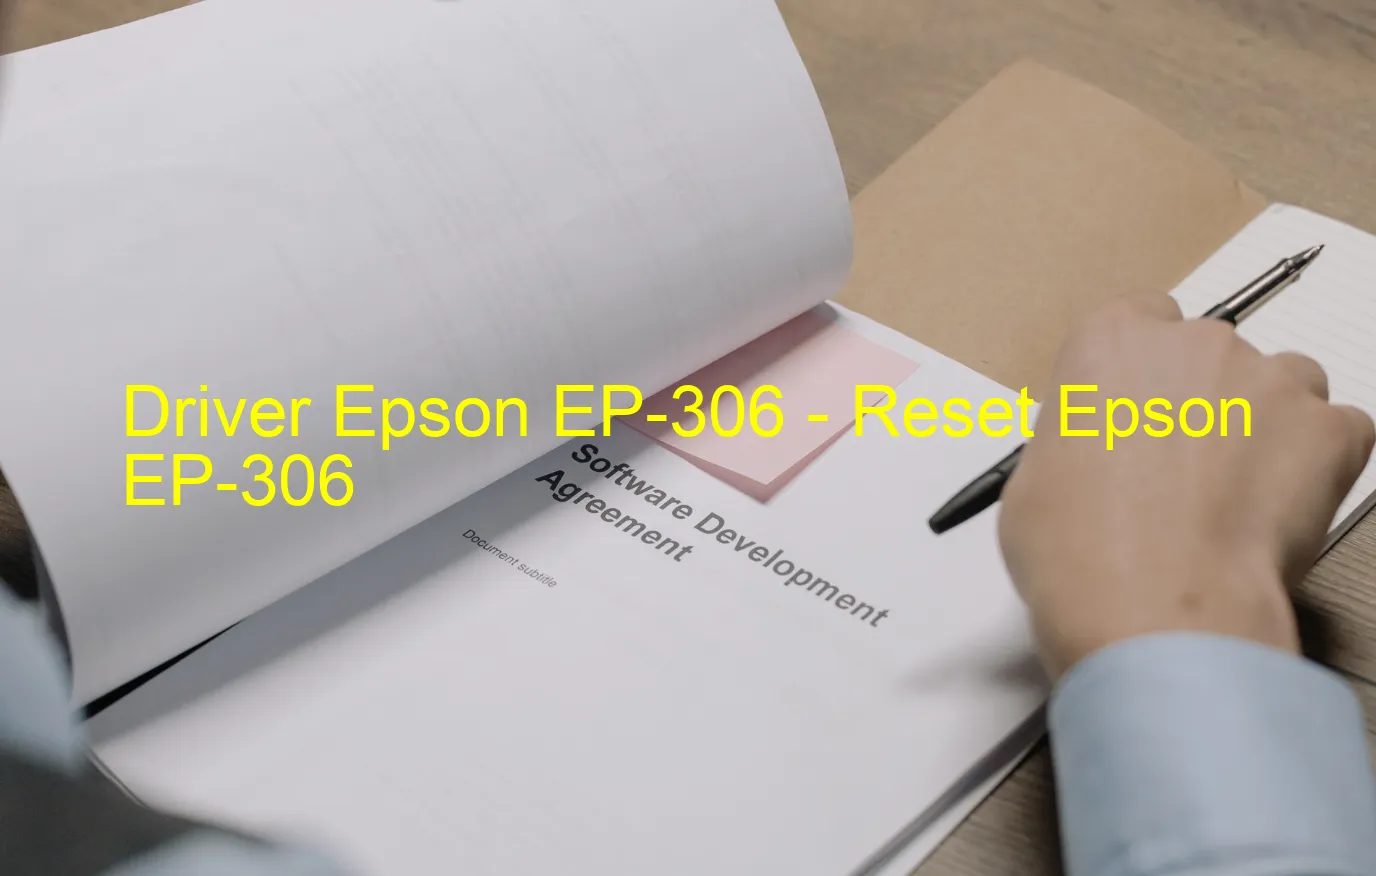 Epson EP-306のドライバー、Epson EP-306のリセットソフトウェア